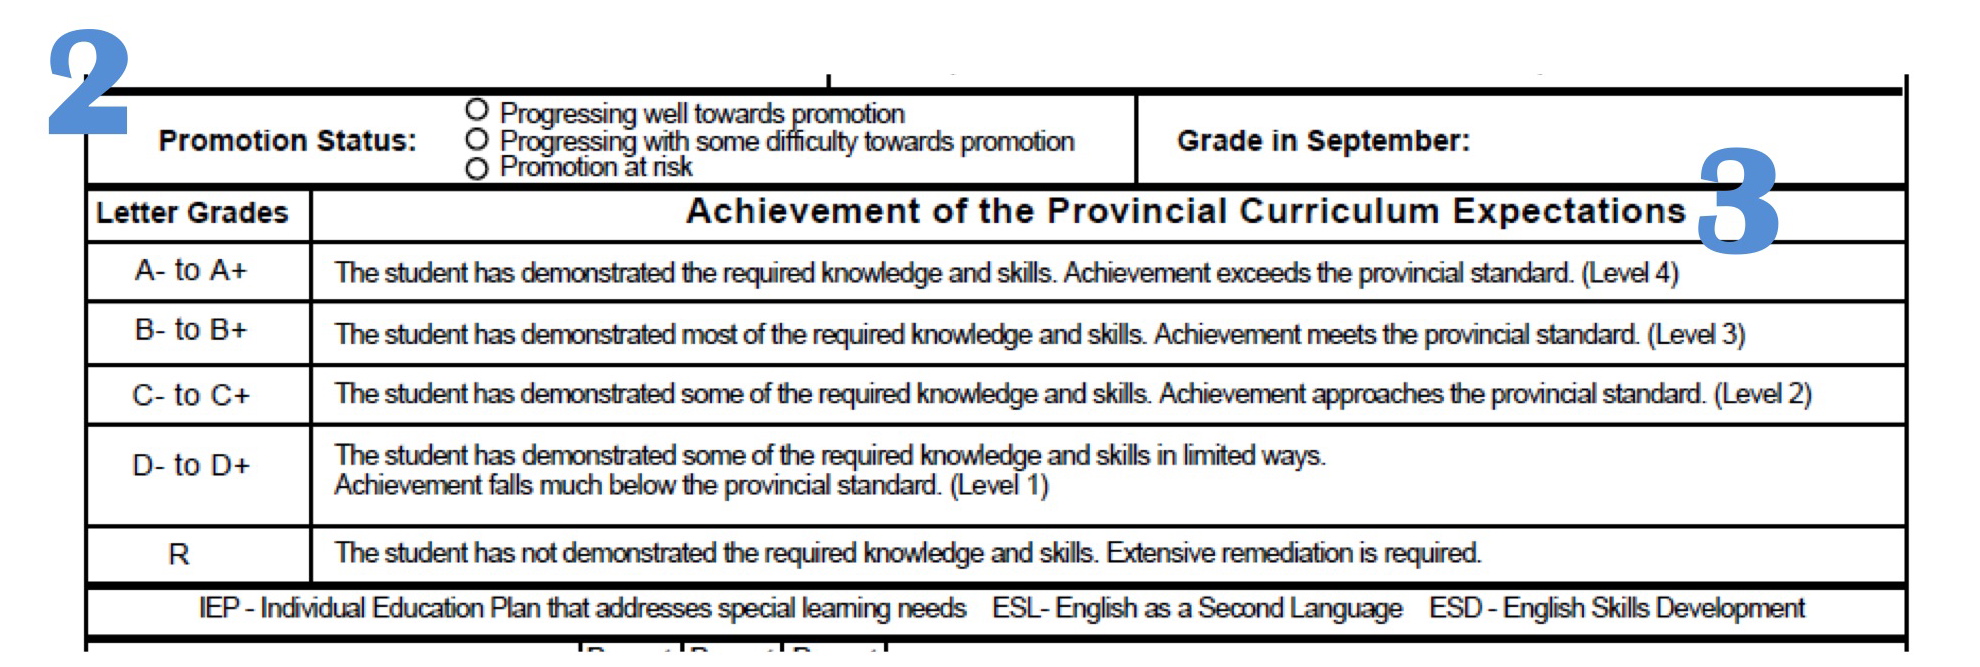 Canadian ontario curriculumm homework grading